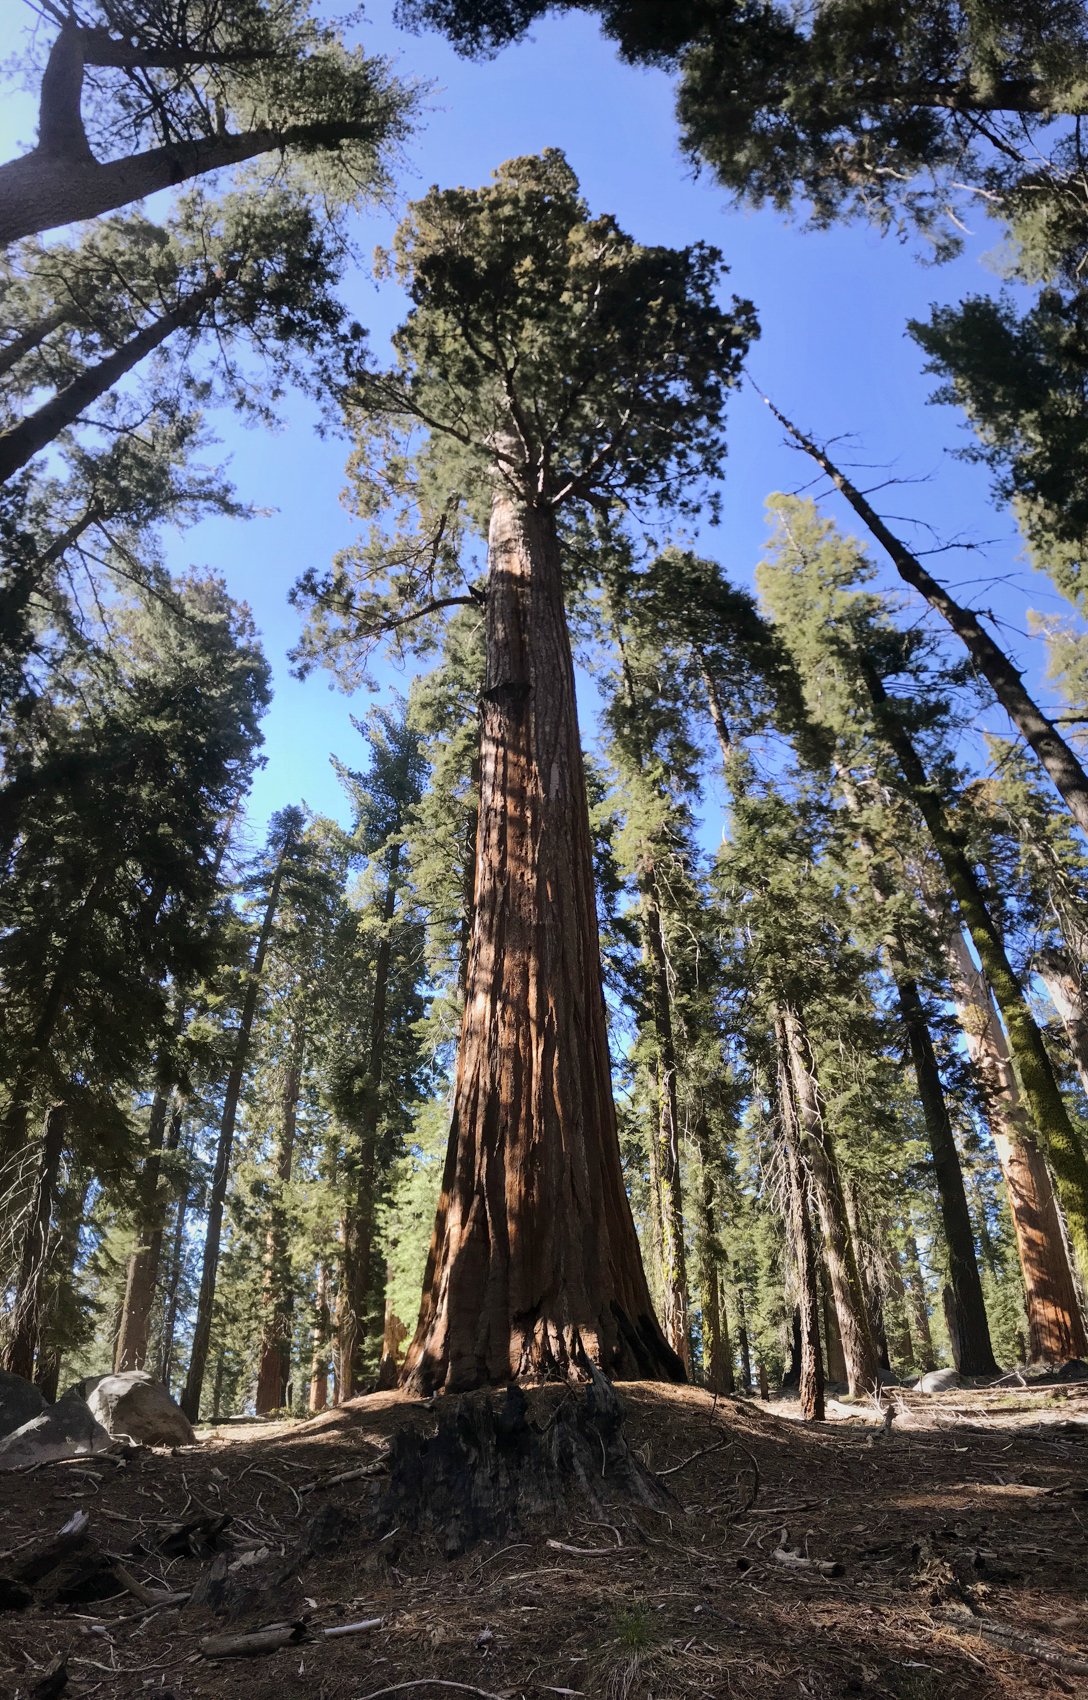  Sequoia National Park, California 